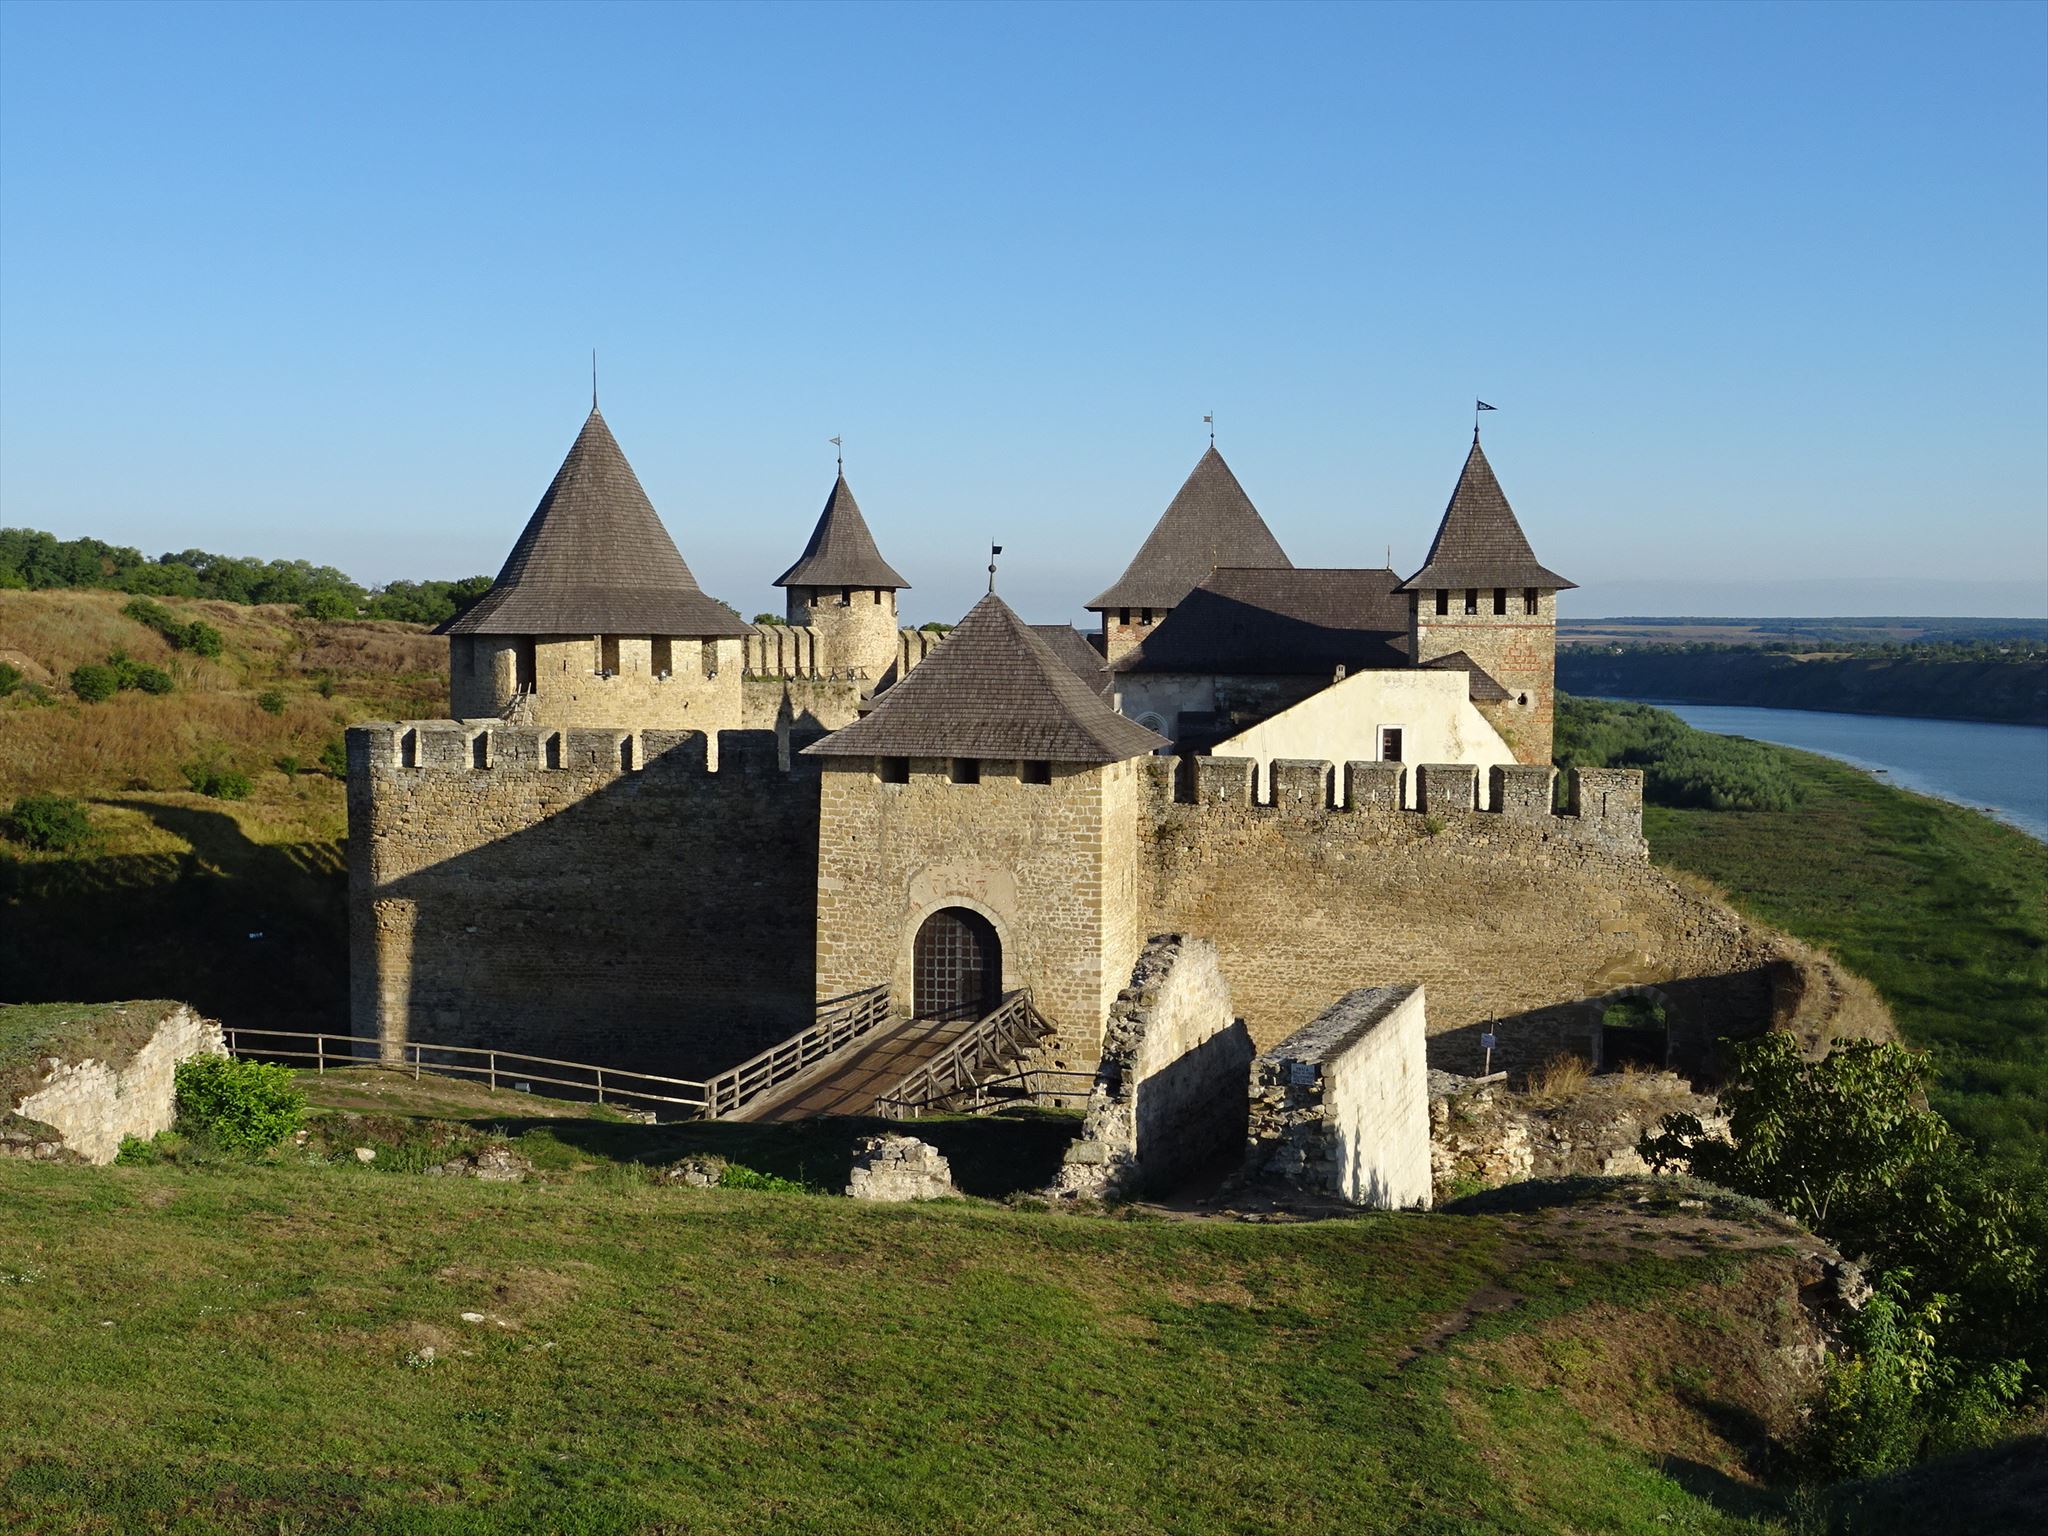 Chotyňská pevnost